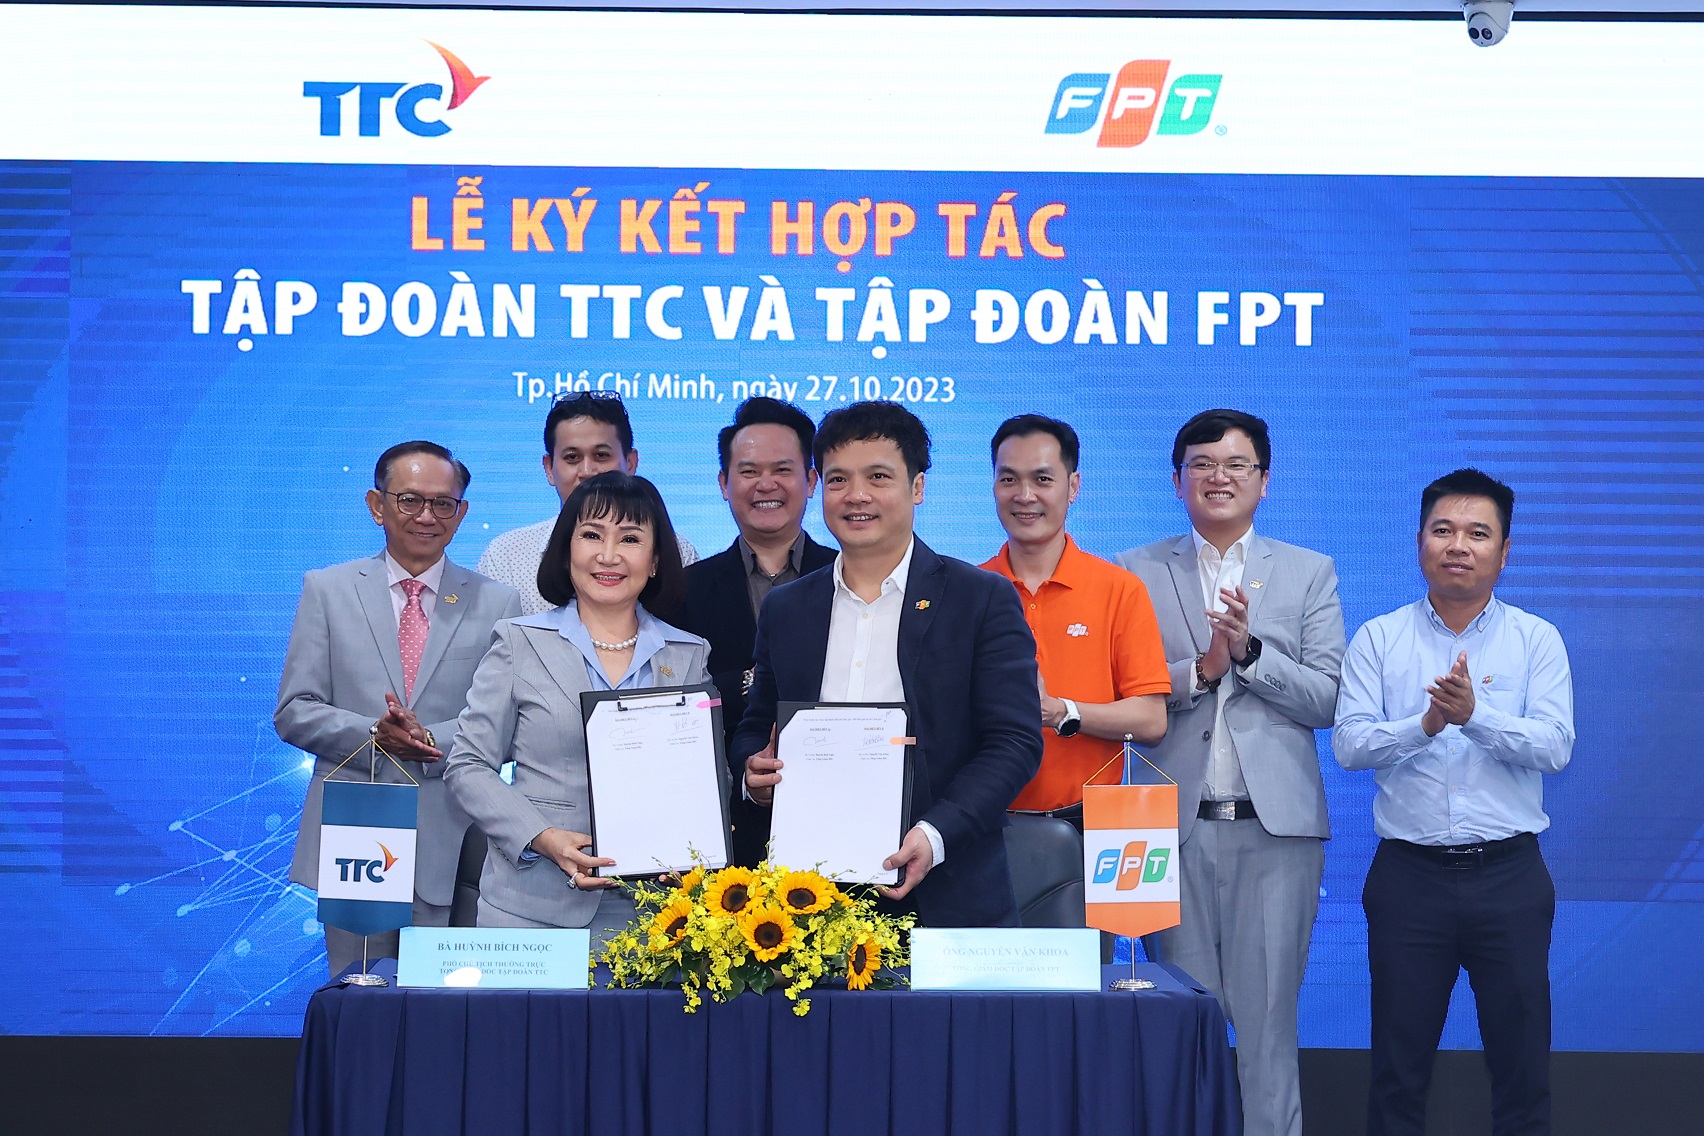 Tập đoàn TTC bắt tay hợp tác và Tập đoàn FPT - Ảnh 1.